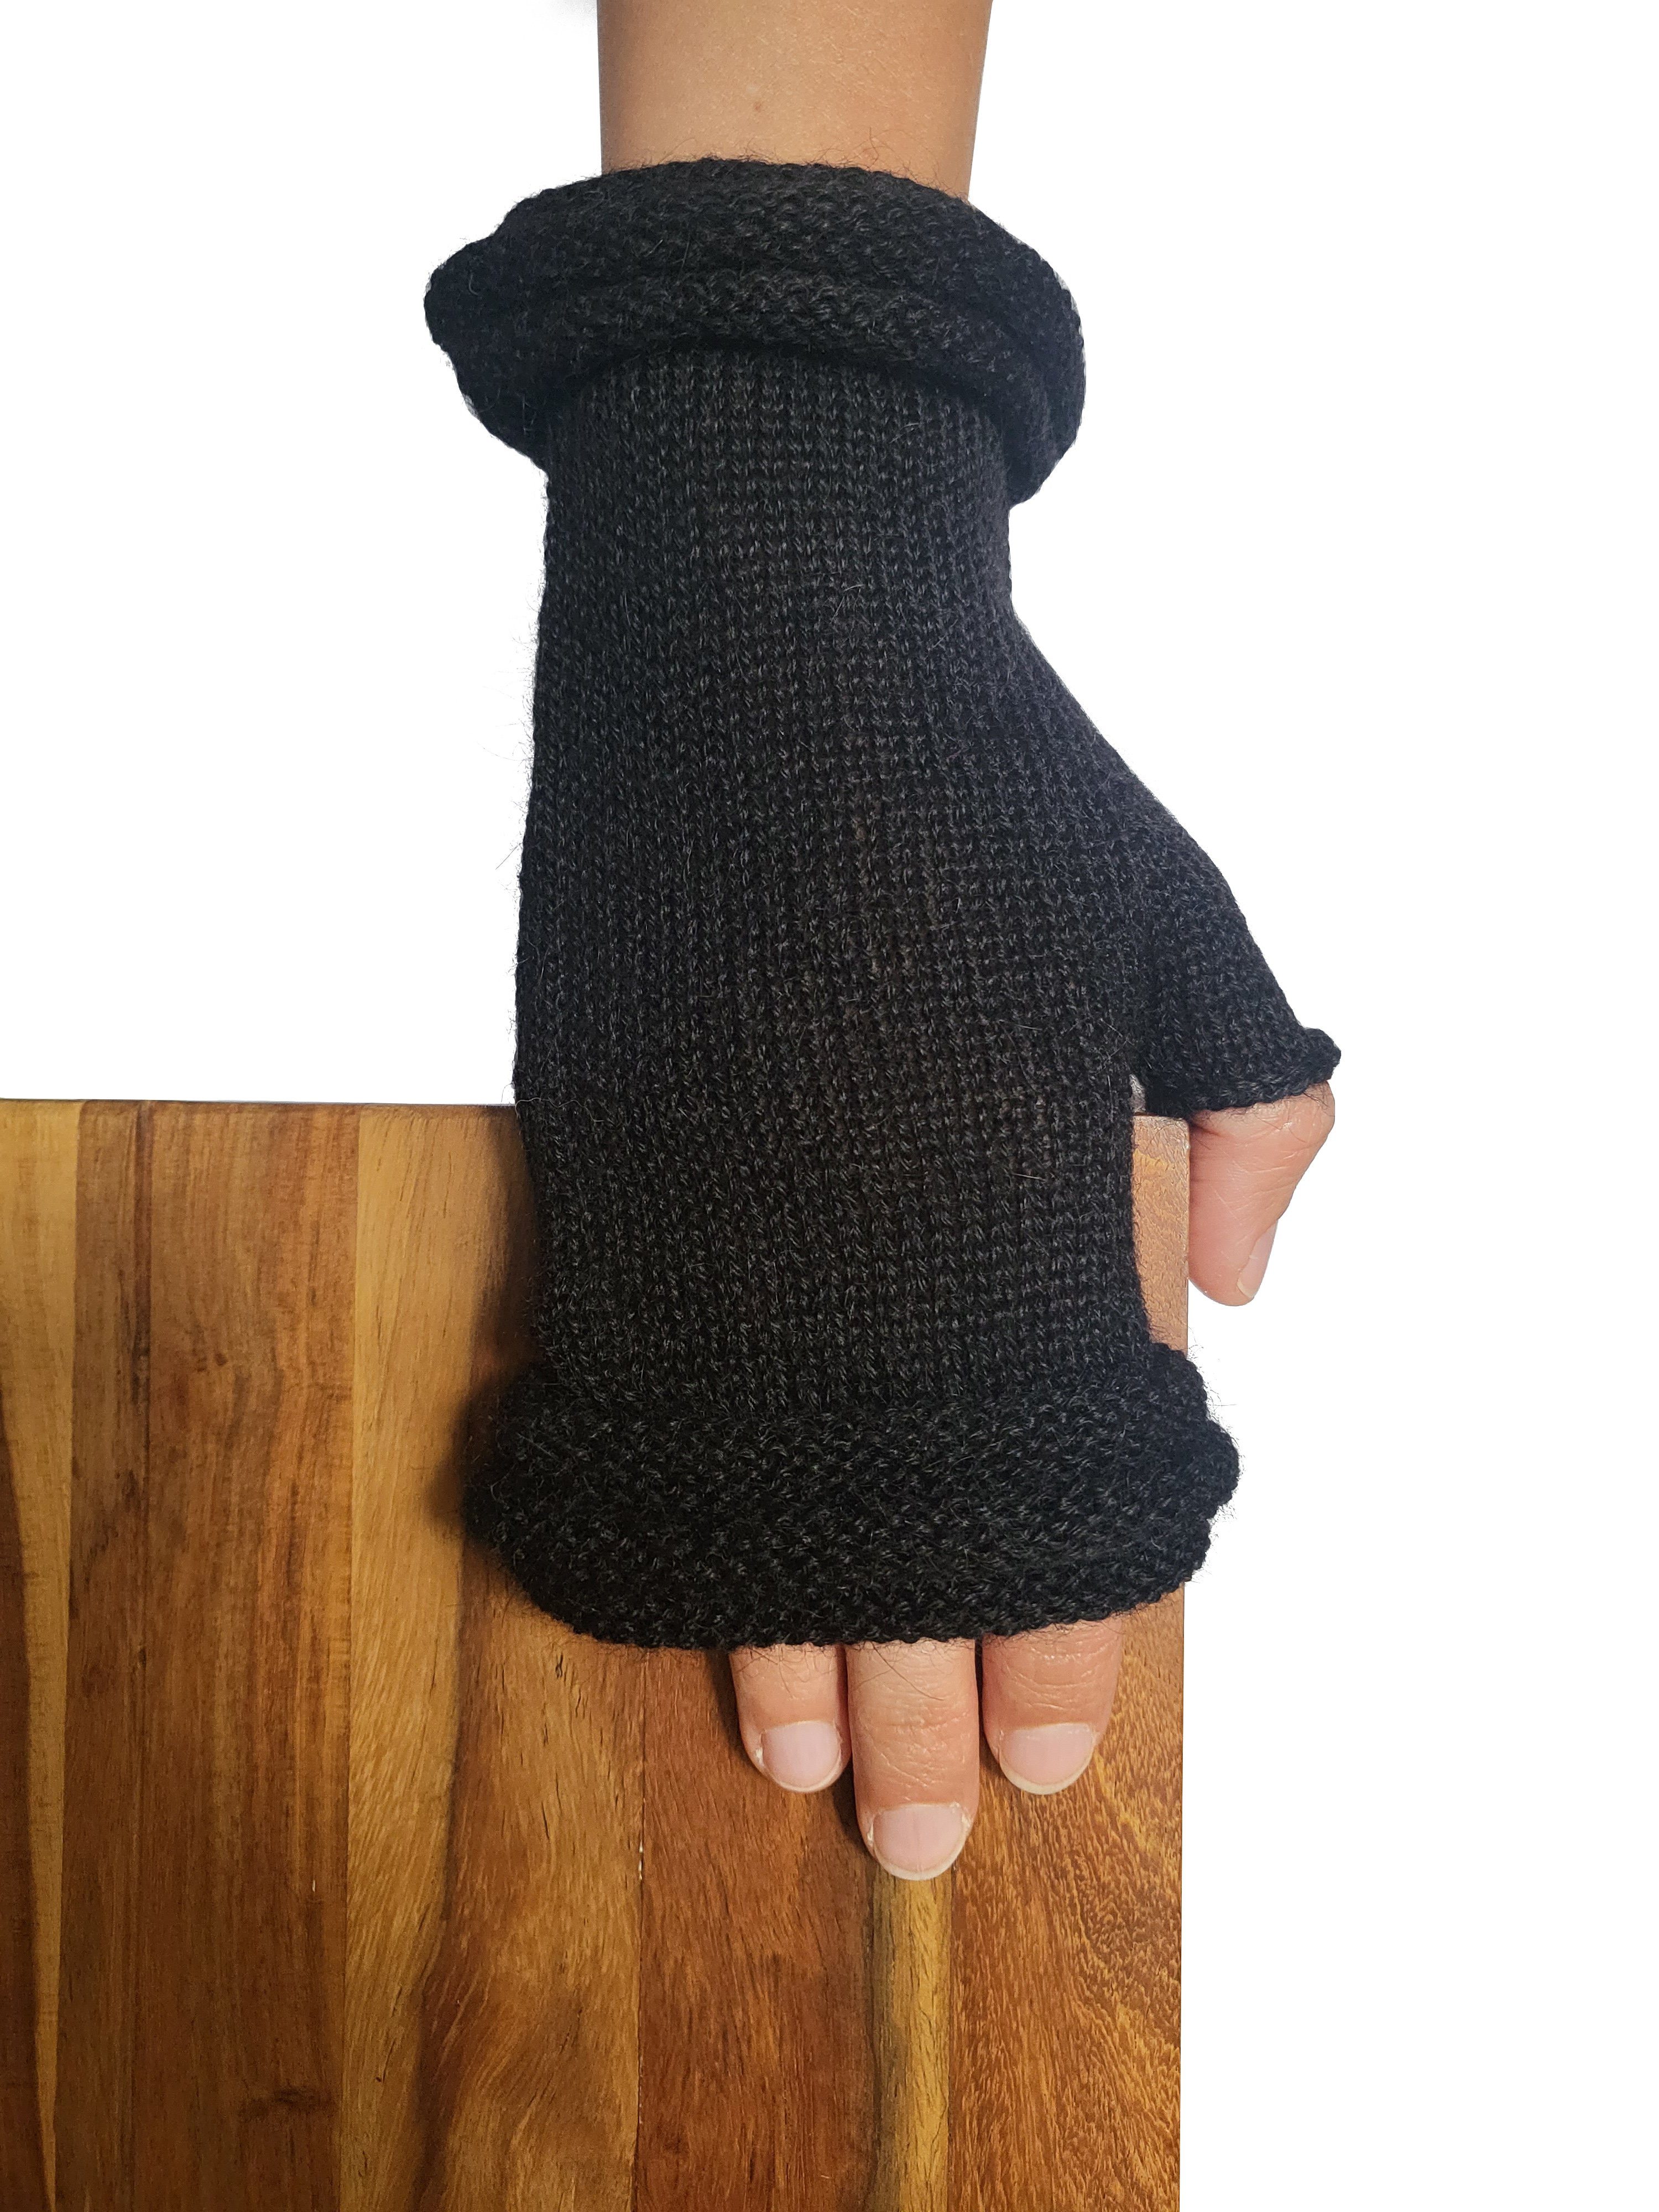 Gear Handschuhe Damen schwarz Posh Herren aus Fäustlinge Storiguanti Alpakawolle Alpaka 100%